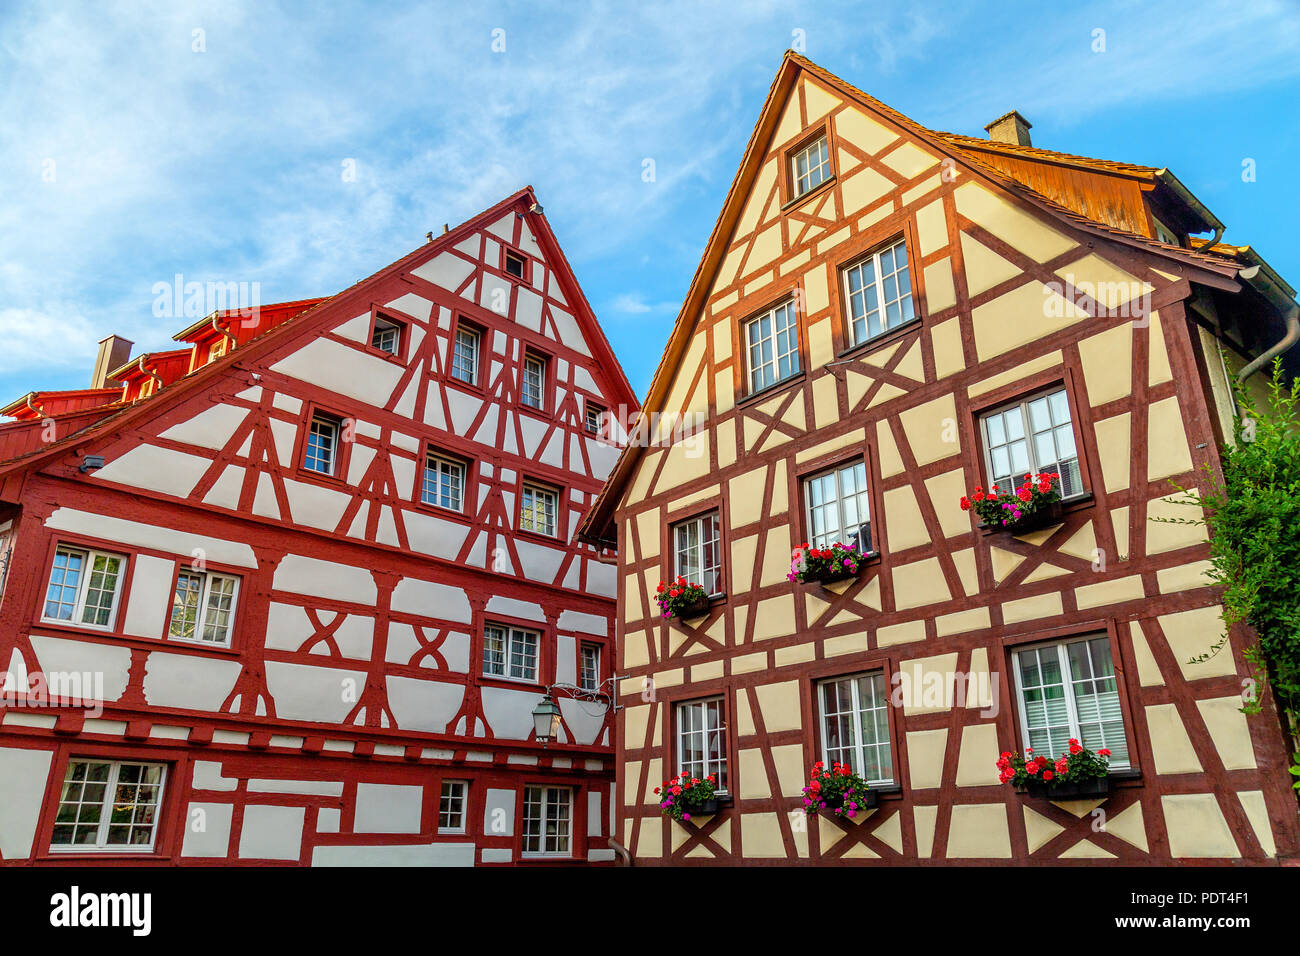 Mitad de madera roja y blanca de las fachadas de las casas en Meersburg, ejemplo típico de arquitectura Fachwerk esparcidas en Alemania y Francia, Estrasburgo Foto de stock